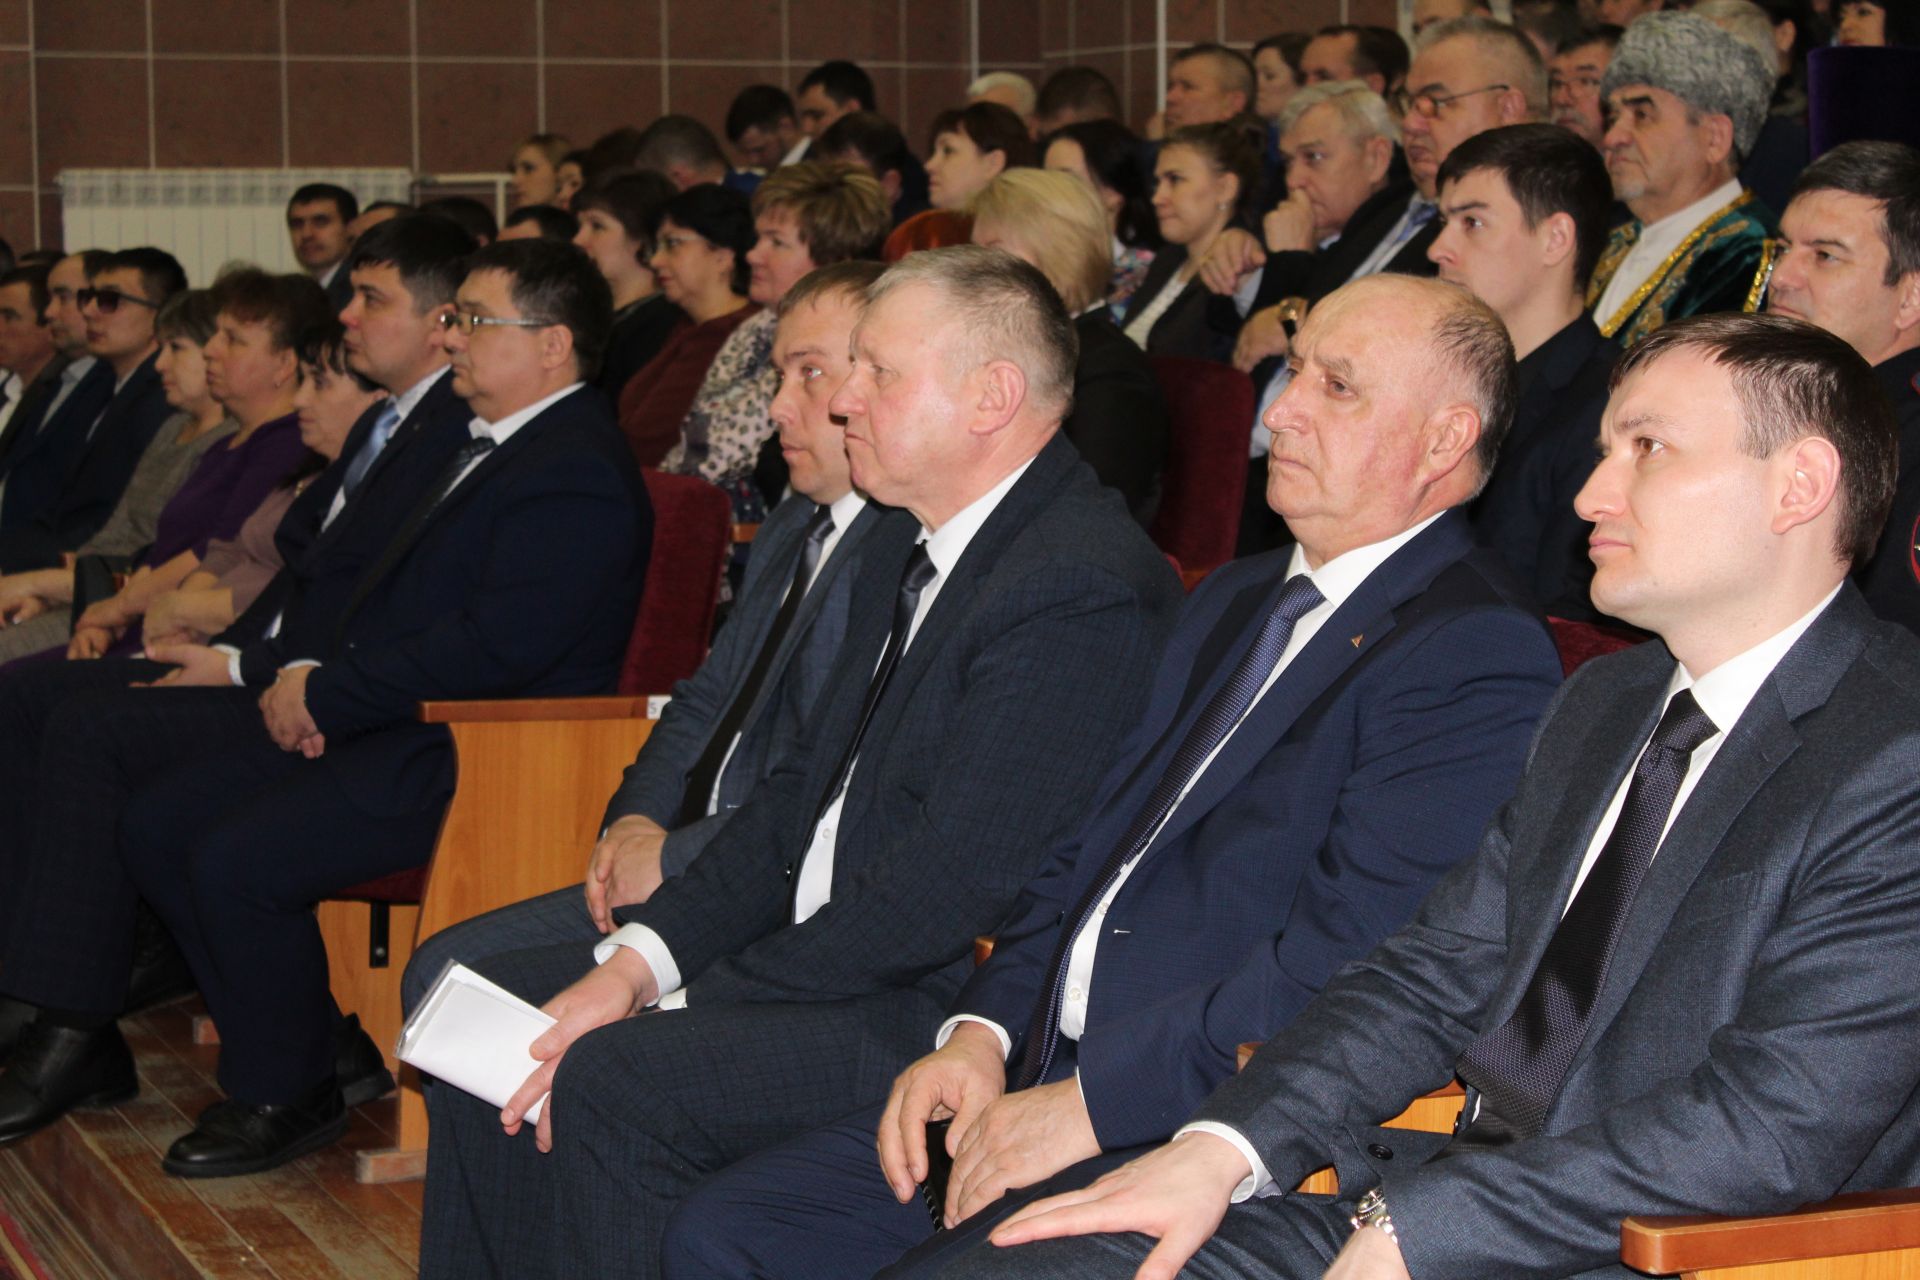 43-е заседание Совета Дрожжановского муниципального района -2020